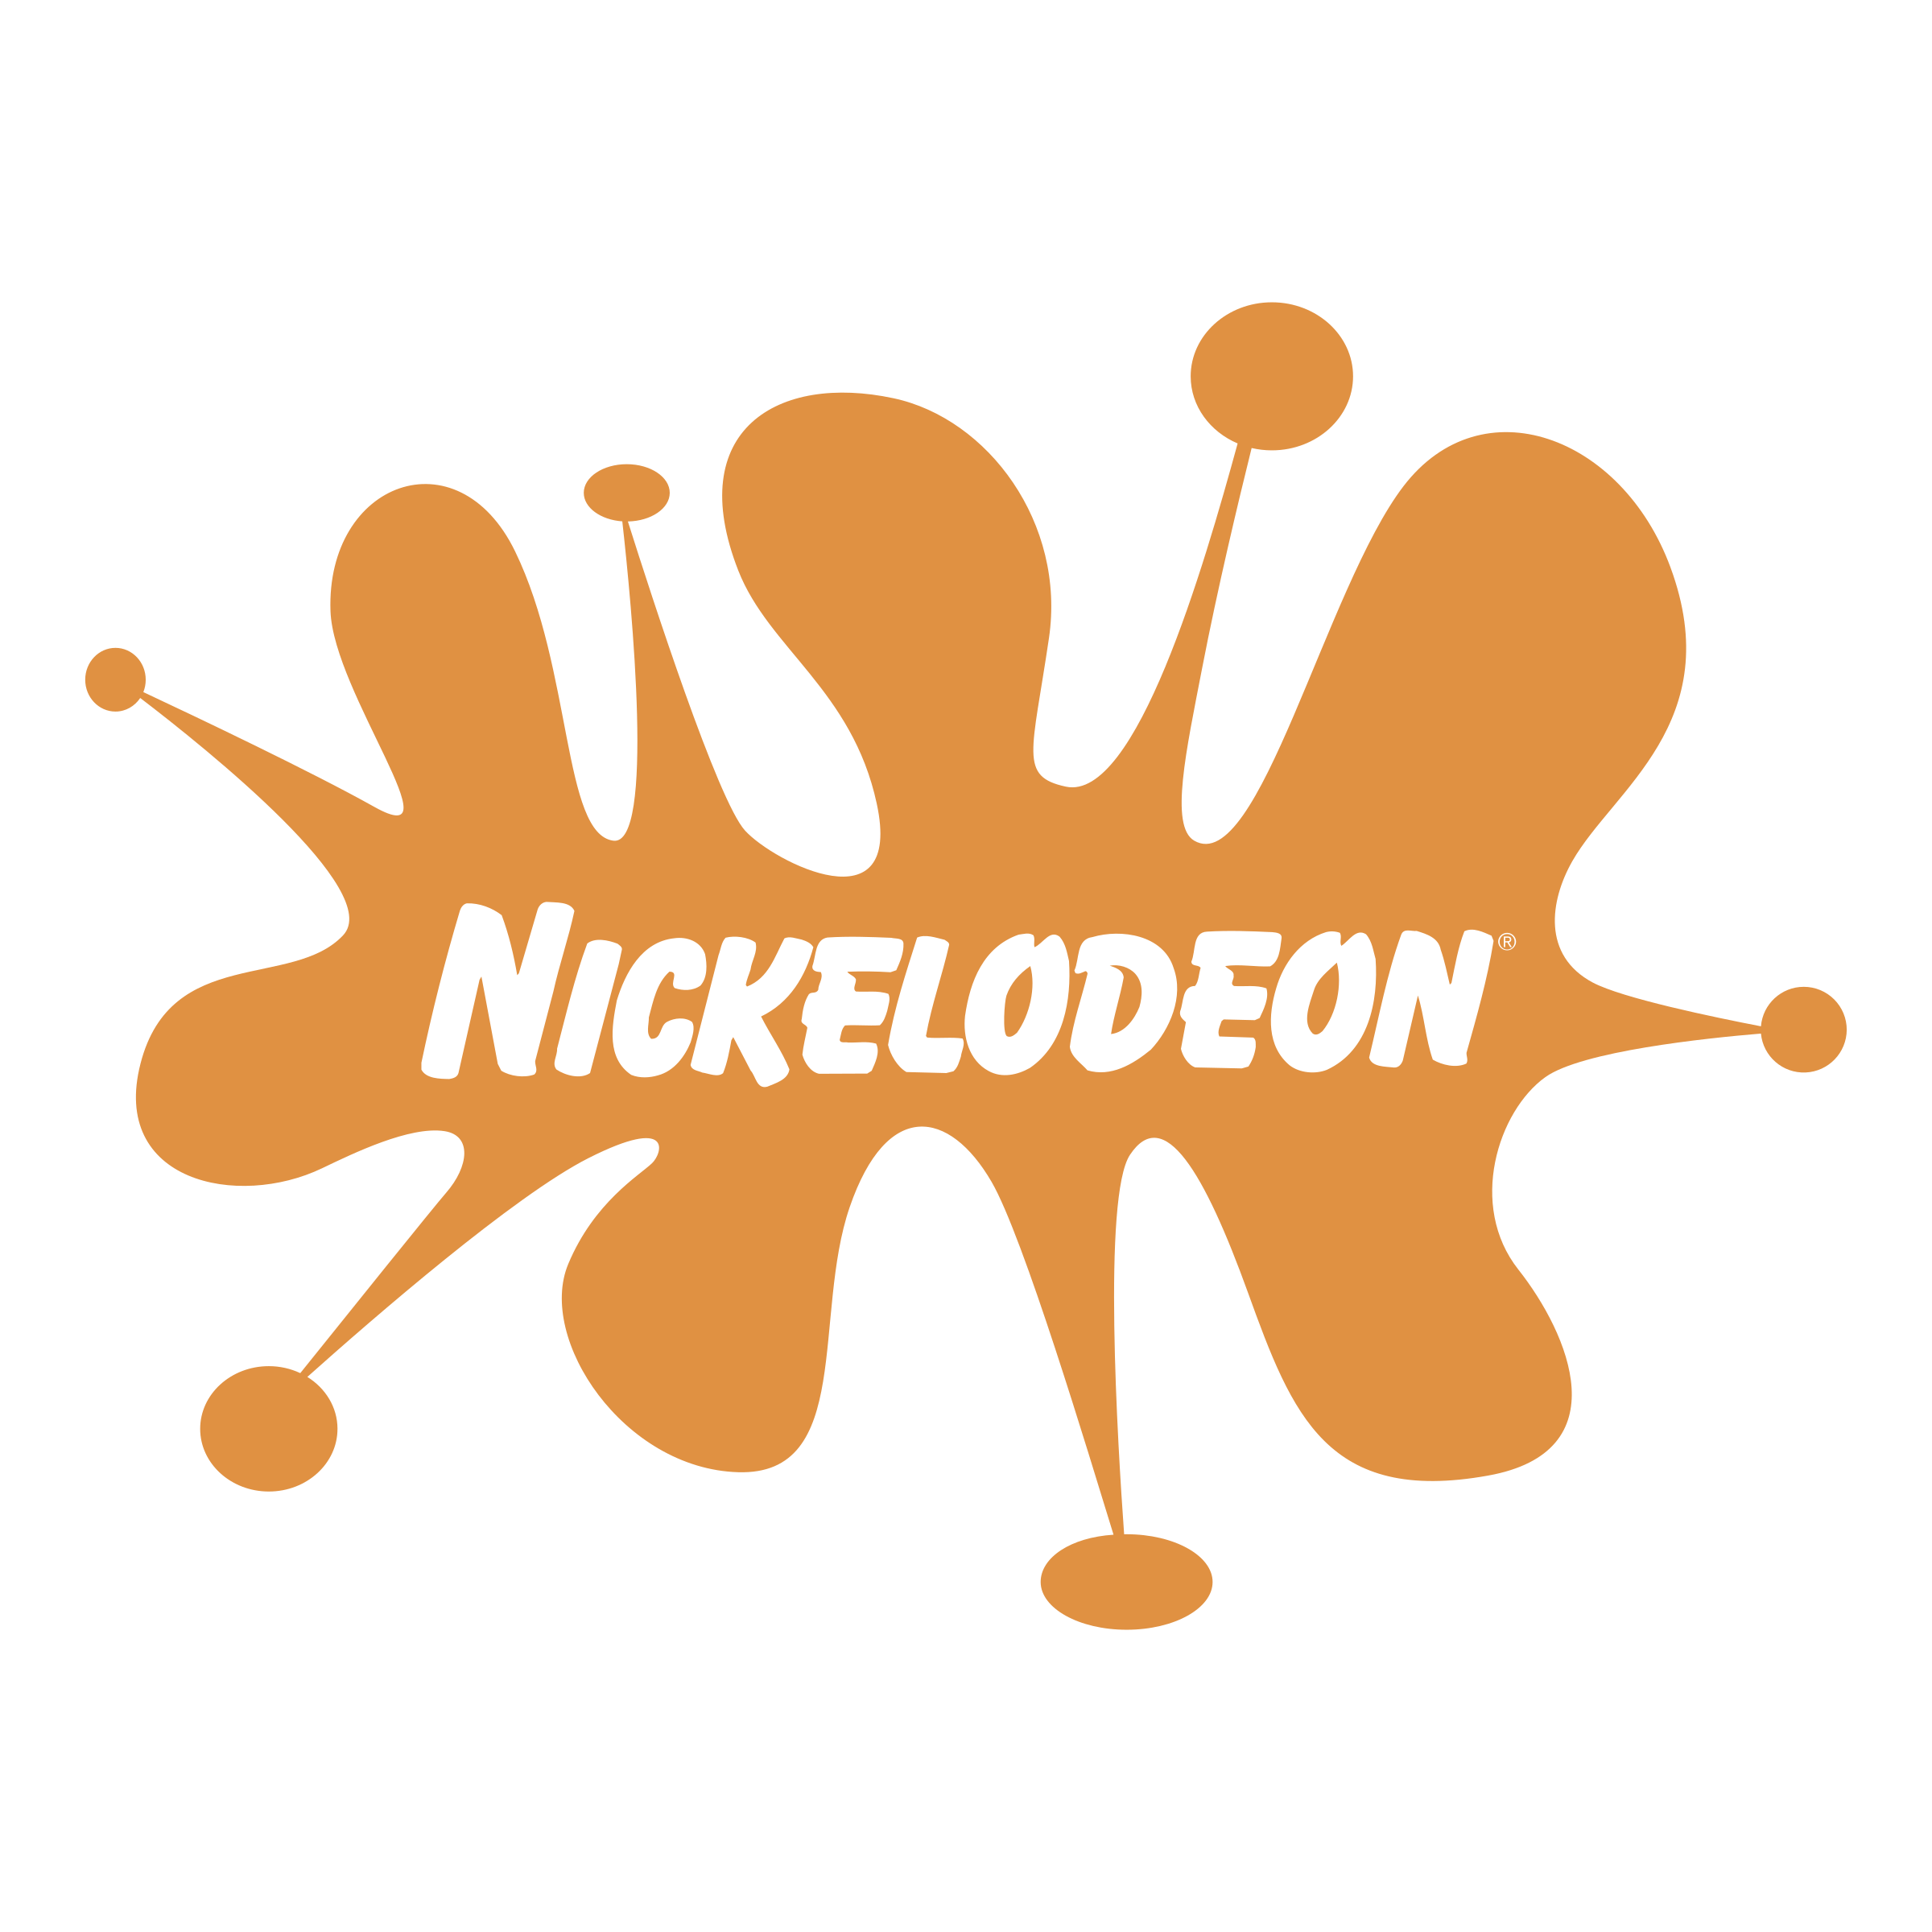 Nickelodeon - детско-подростковый телевизионный канал.